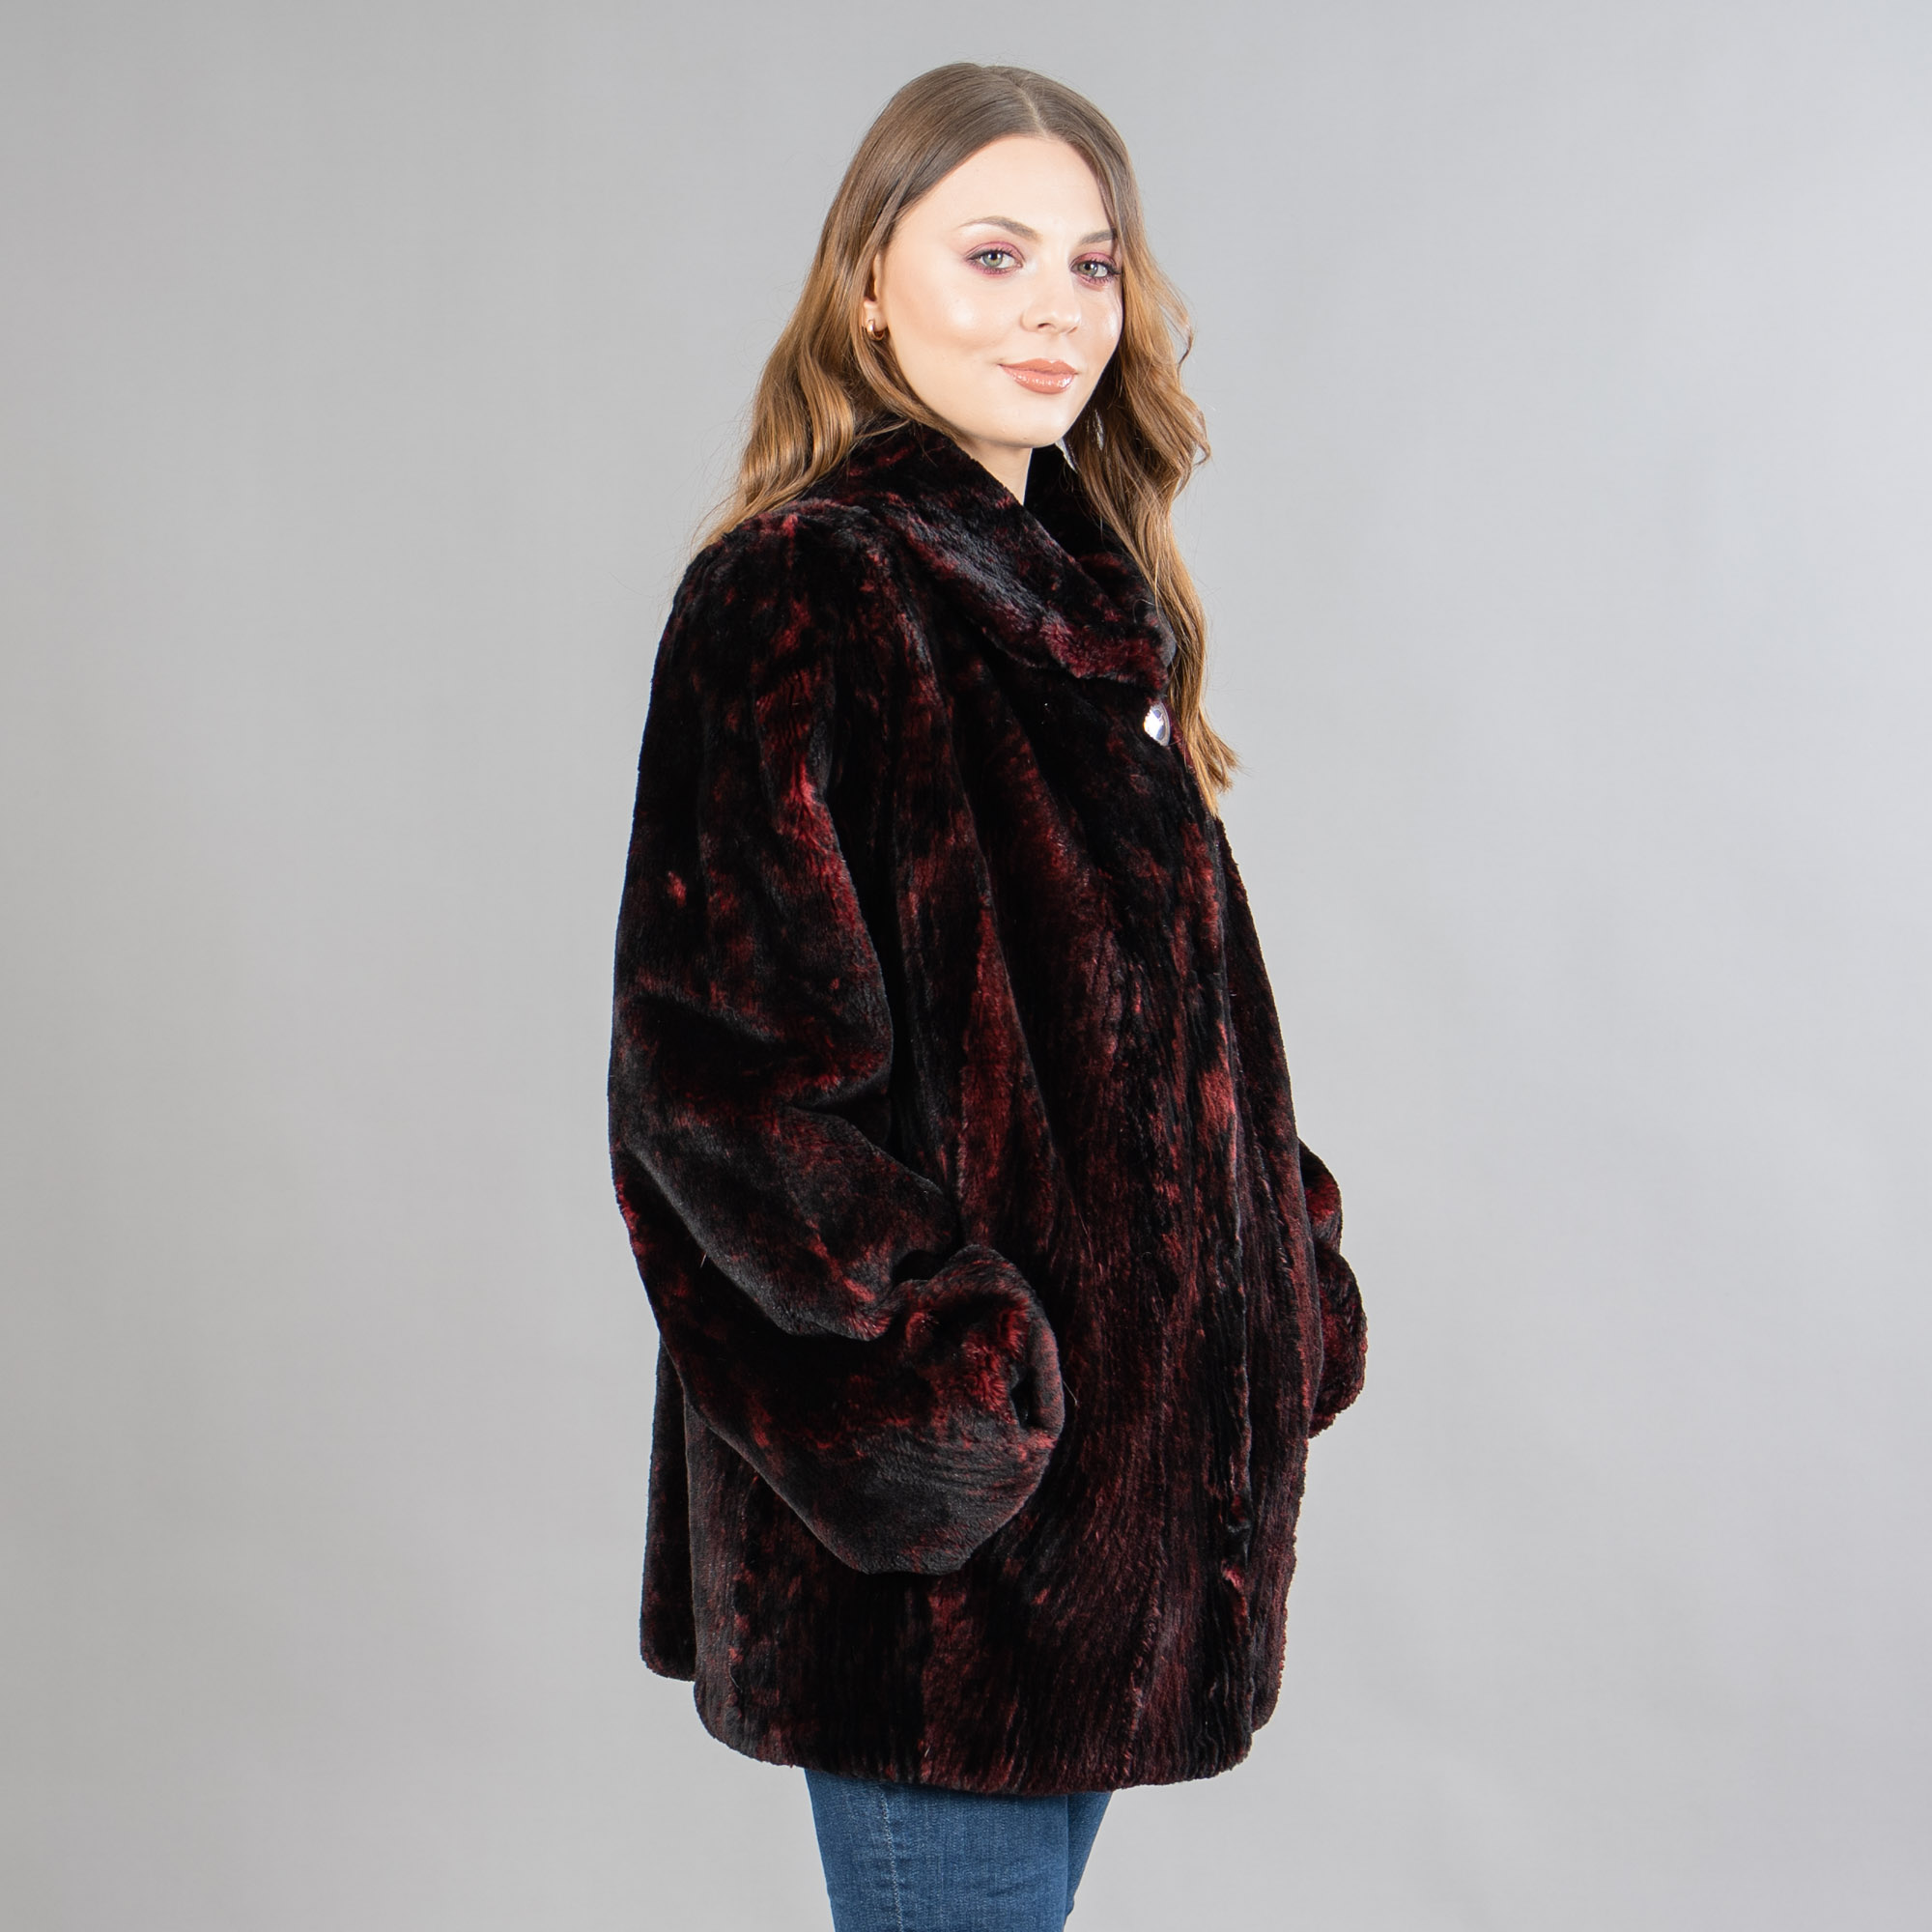 γούνινο σακάκι κάστορα σε μαύρο-κόκκινο χρώμα